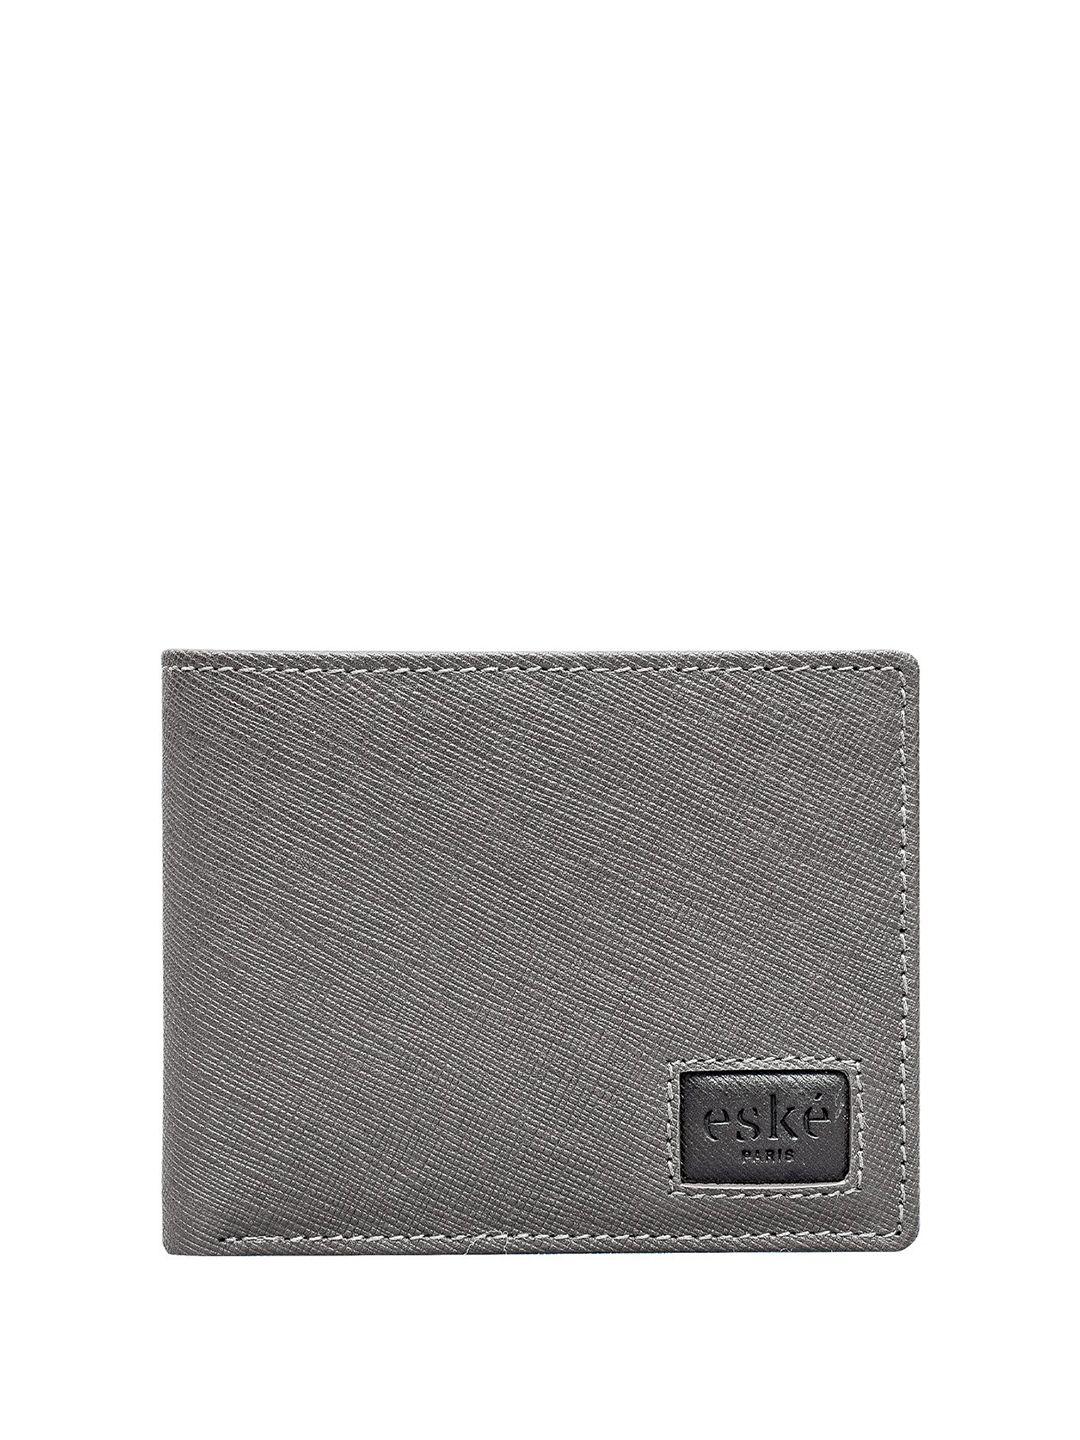 eske men leather two fold wallet